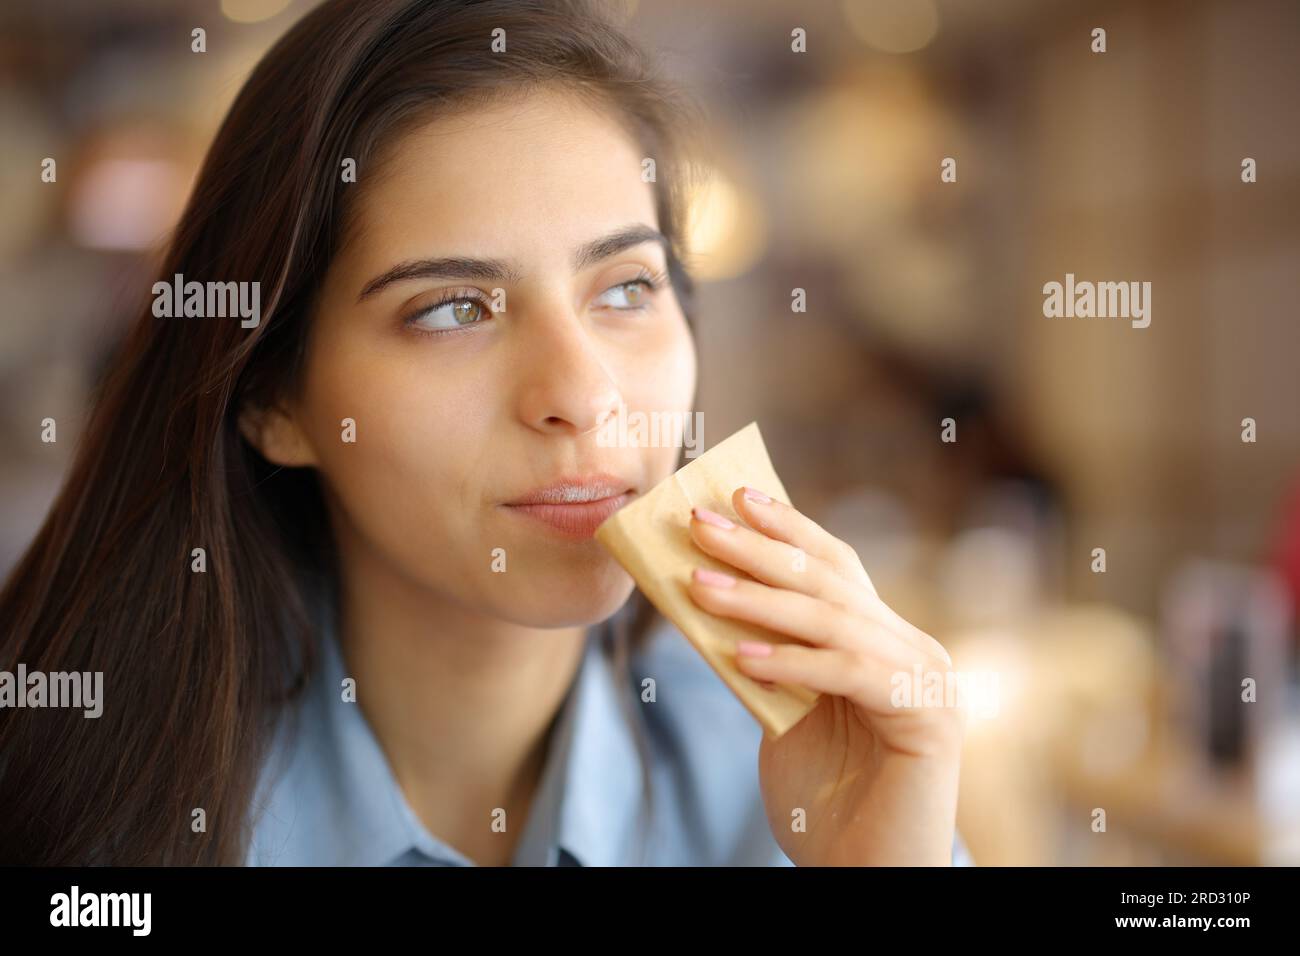 Cliente del restaurante que limpia la boca con papel de seda mirando hacia otro lado Foto de stock